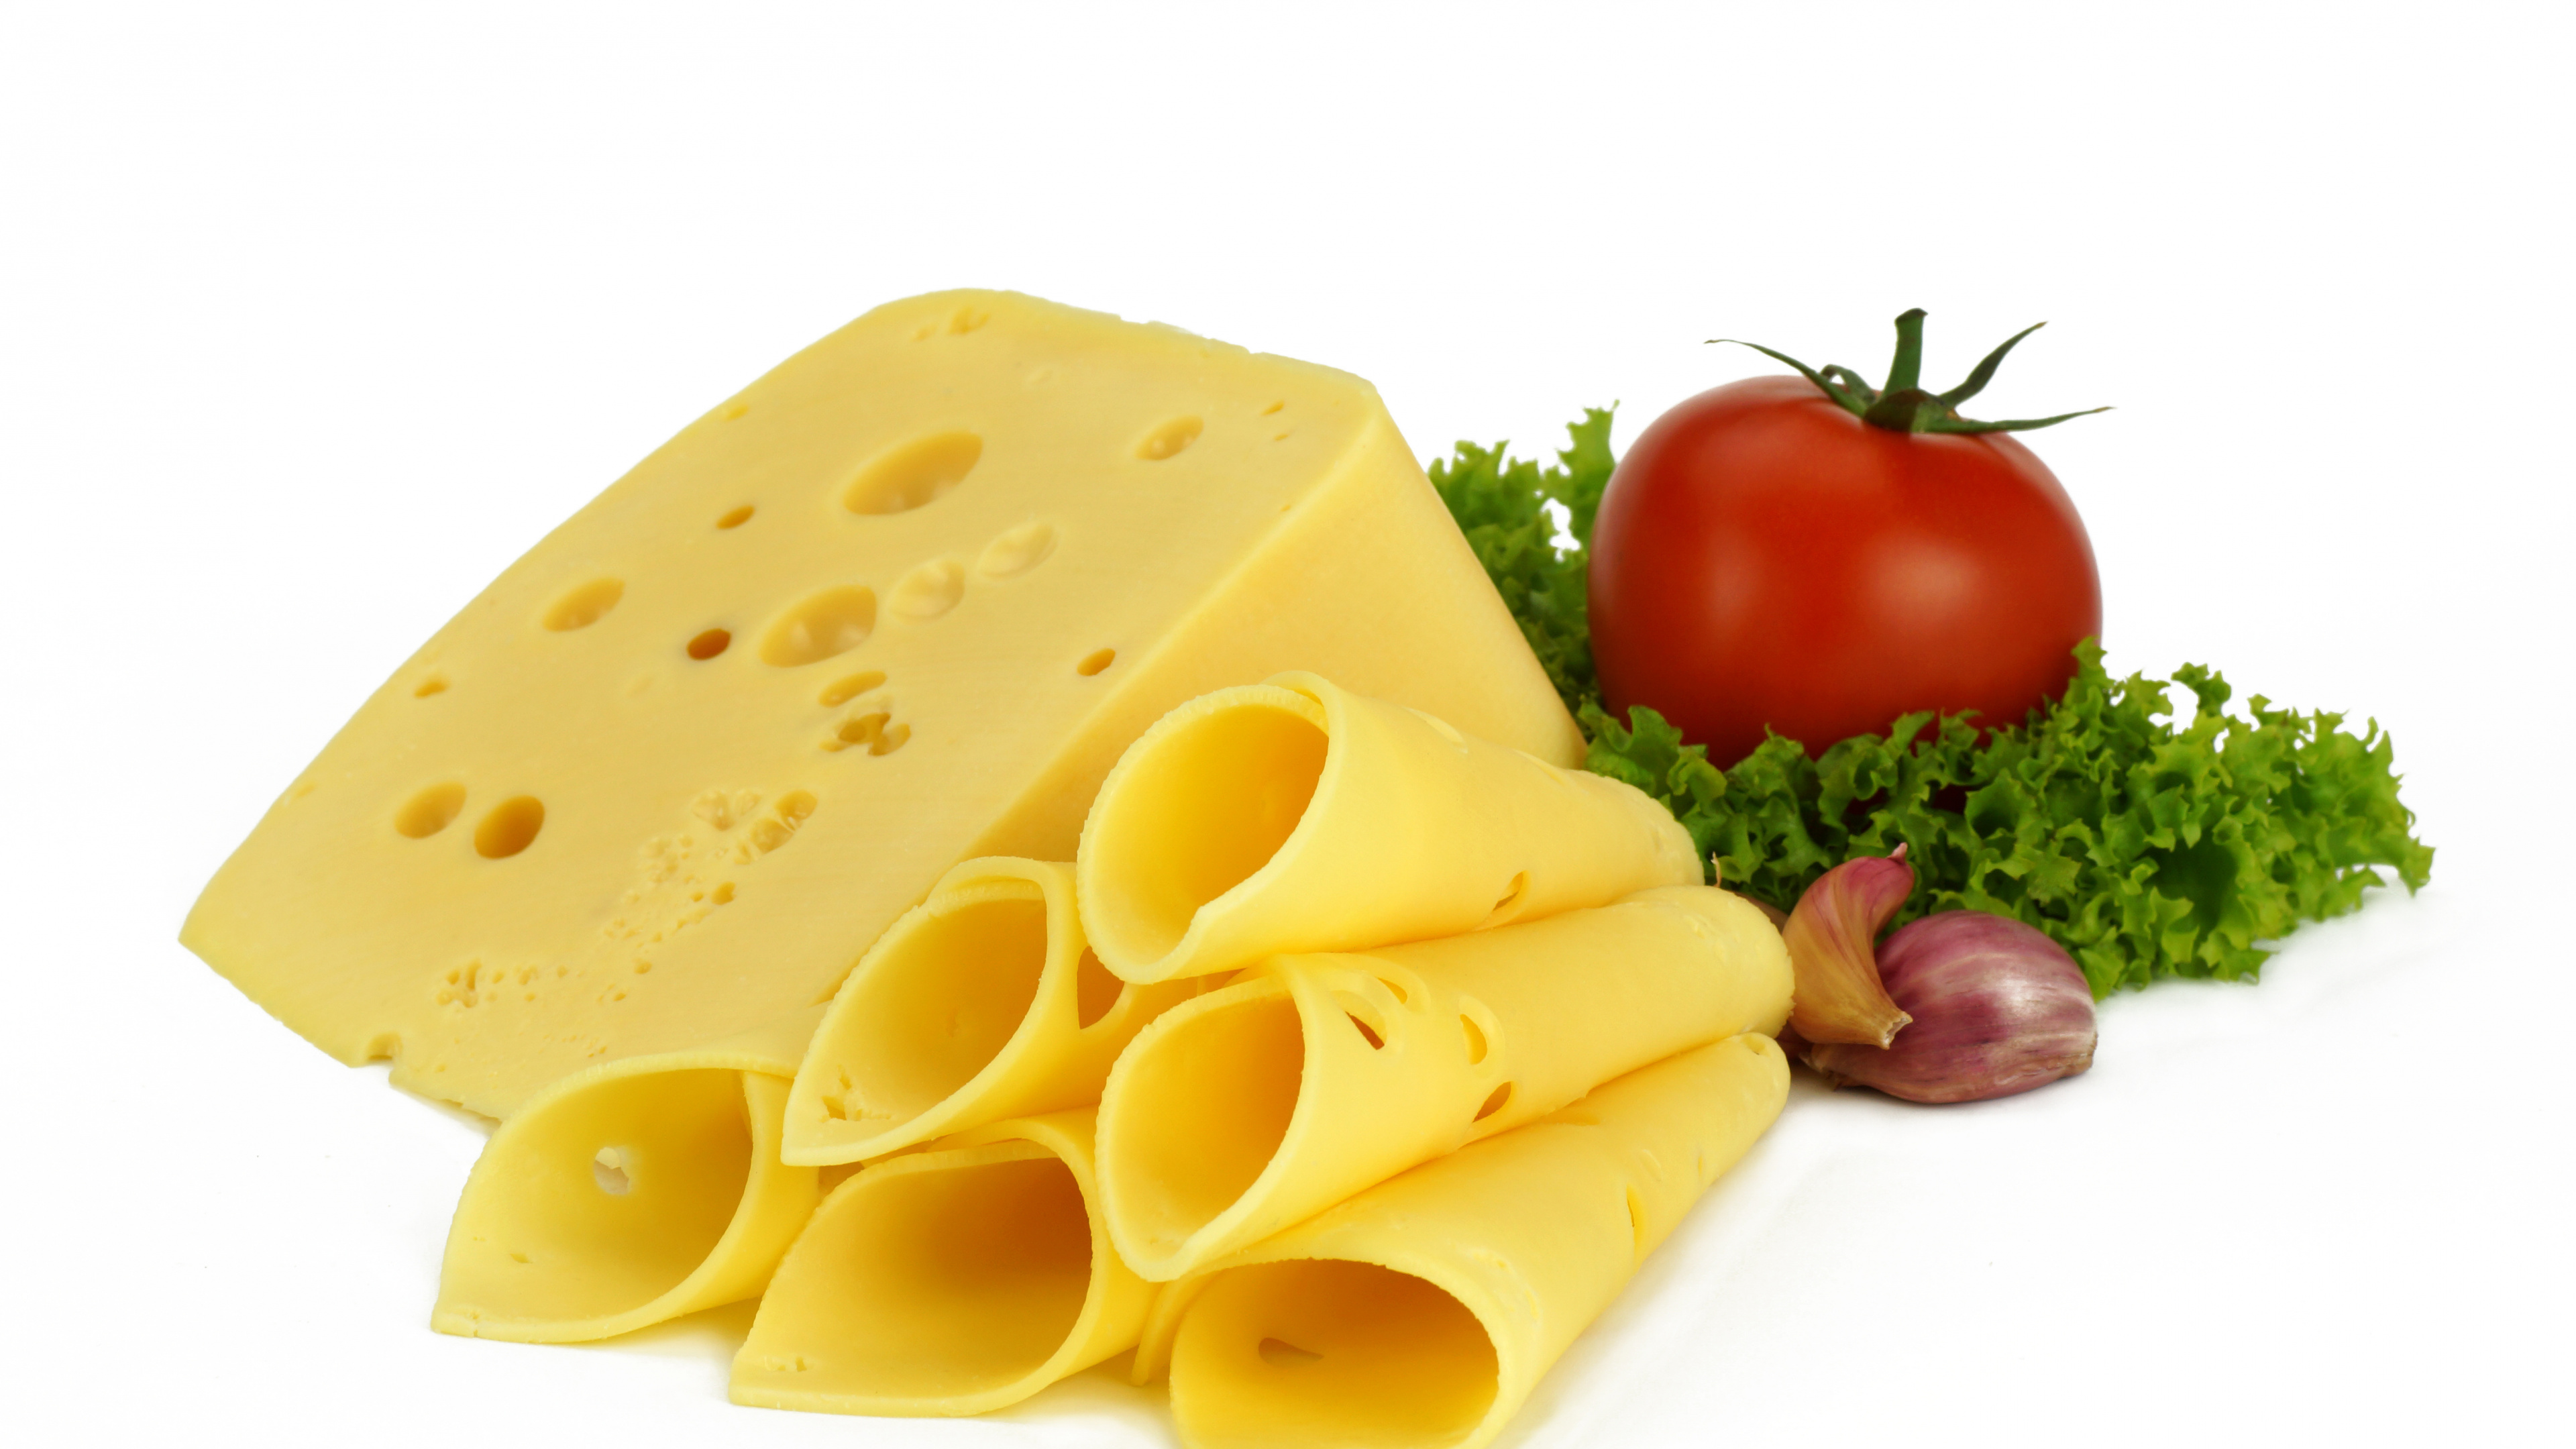 牛奶, 奶酪, 加工奶酪, 食品, 成分 壁纸 3840x2160 允许